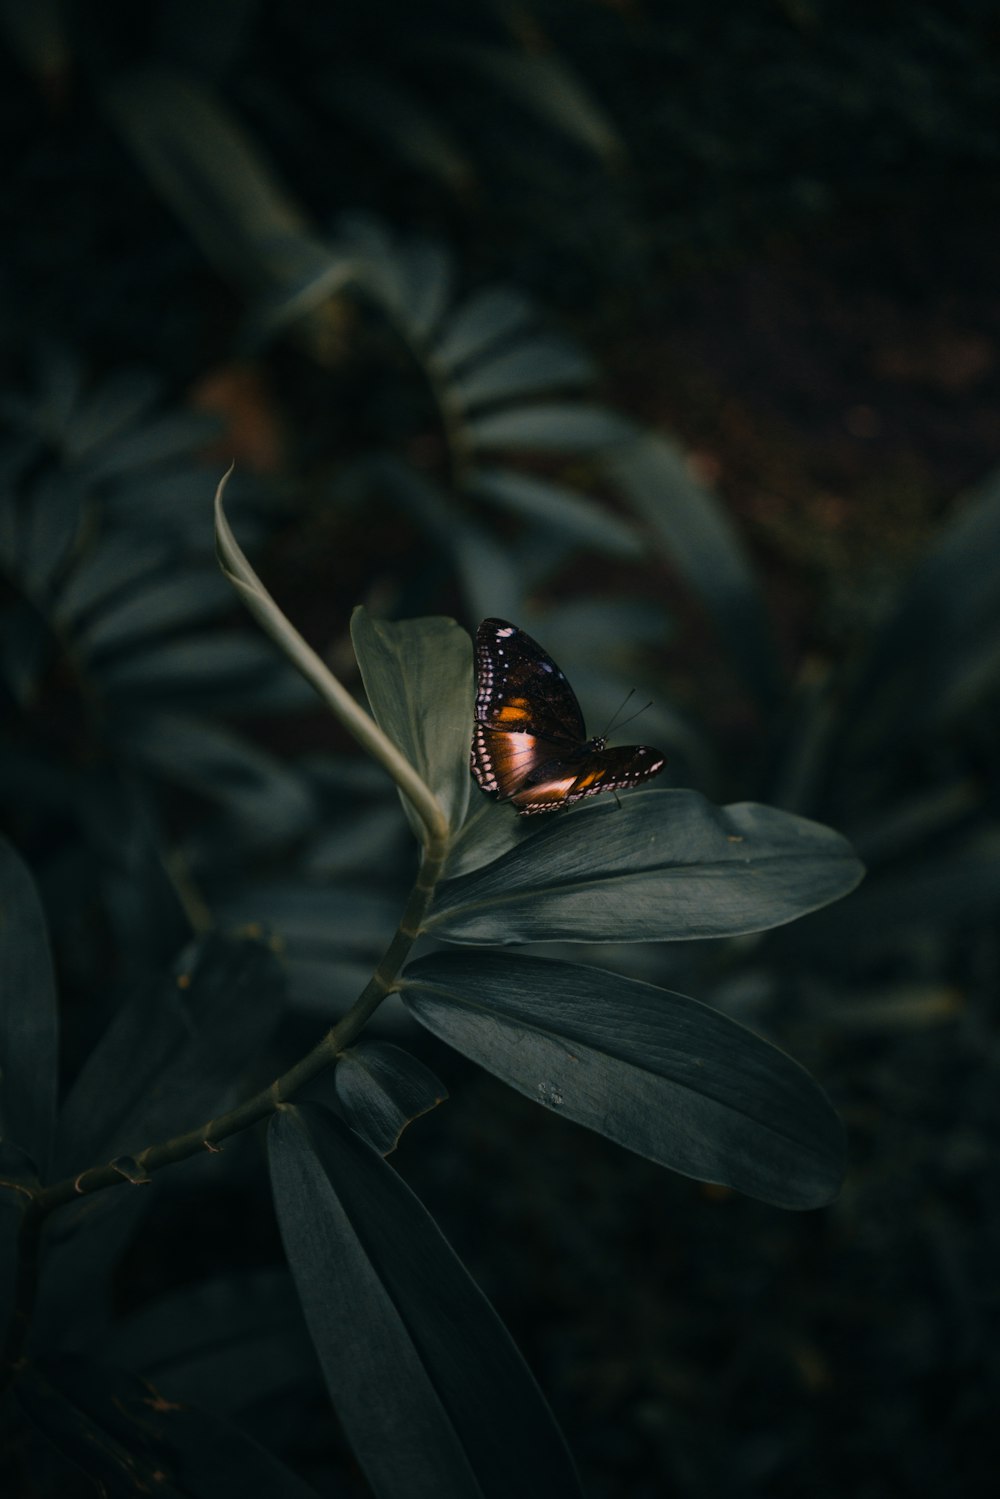 mariposa posada en las hojas